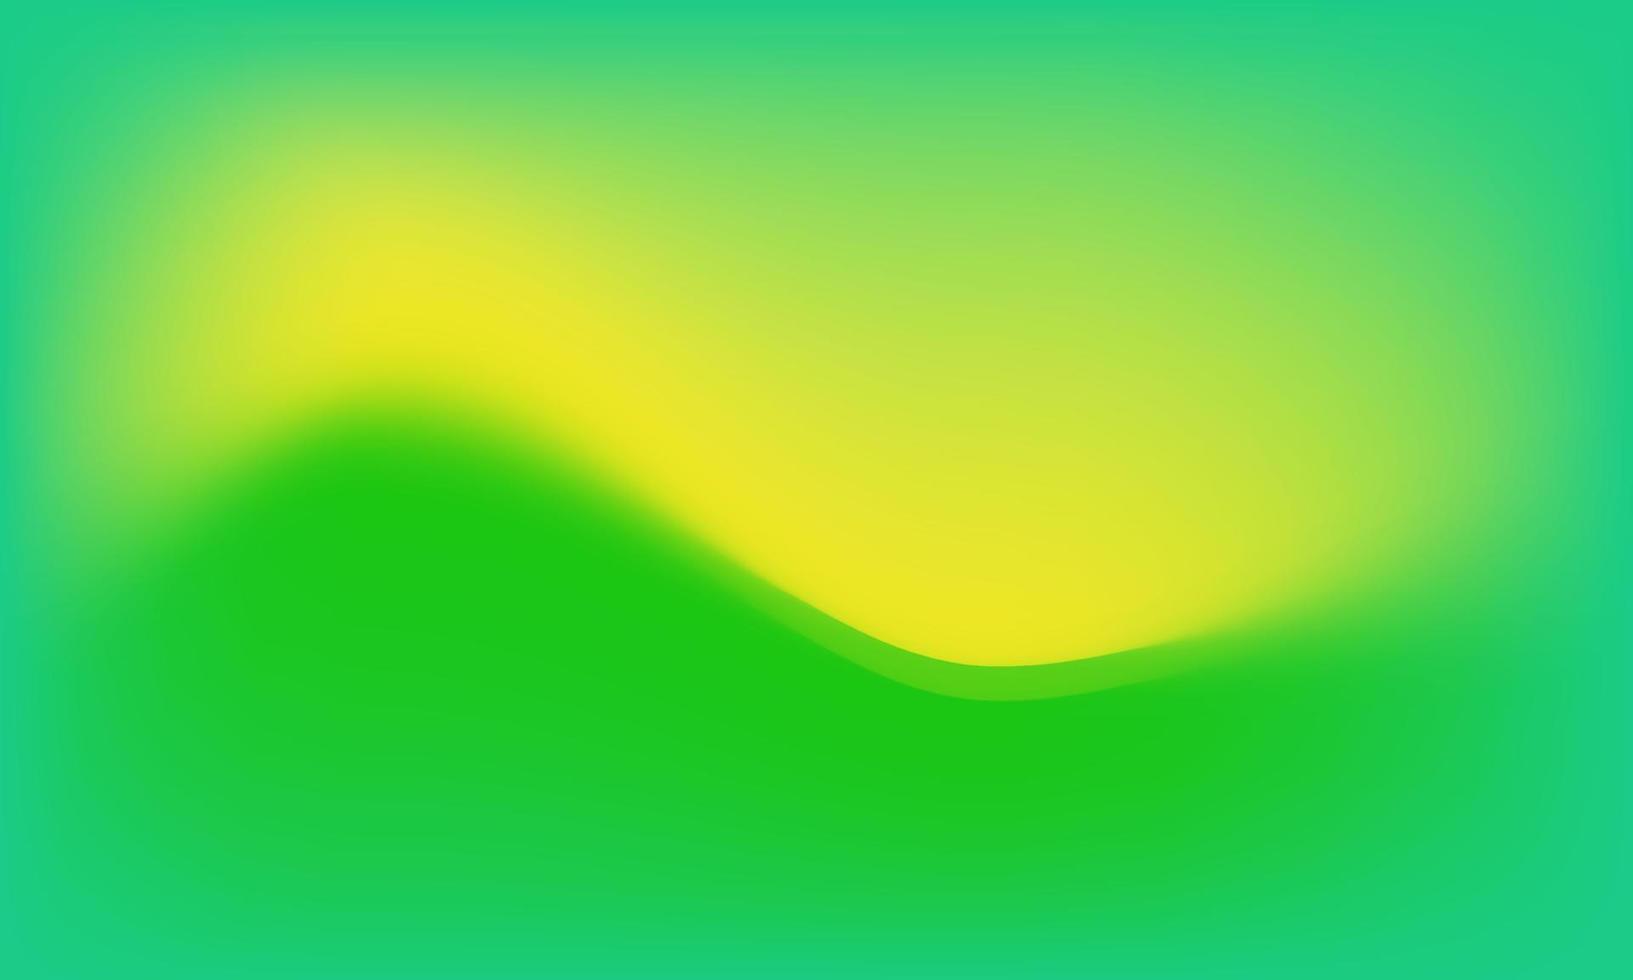 diseño de arte de textura de fondo abstracto con color naranja y verde, humo borroso sobre lienzo con malla de degradado suave vector